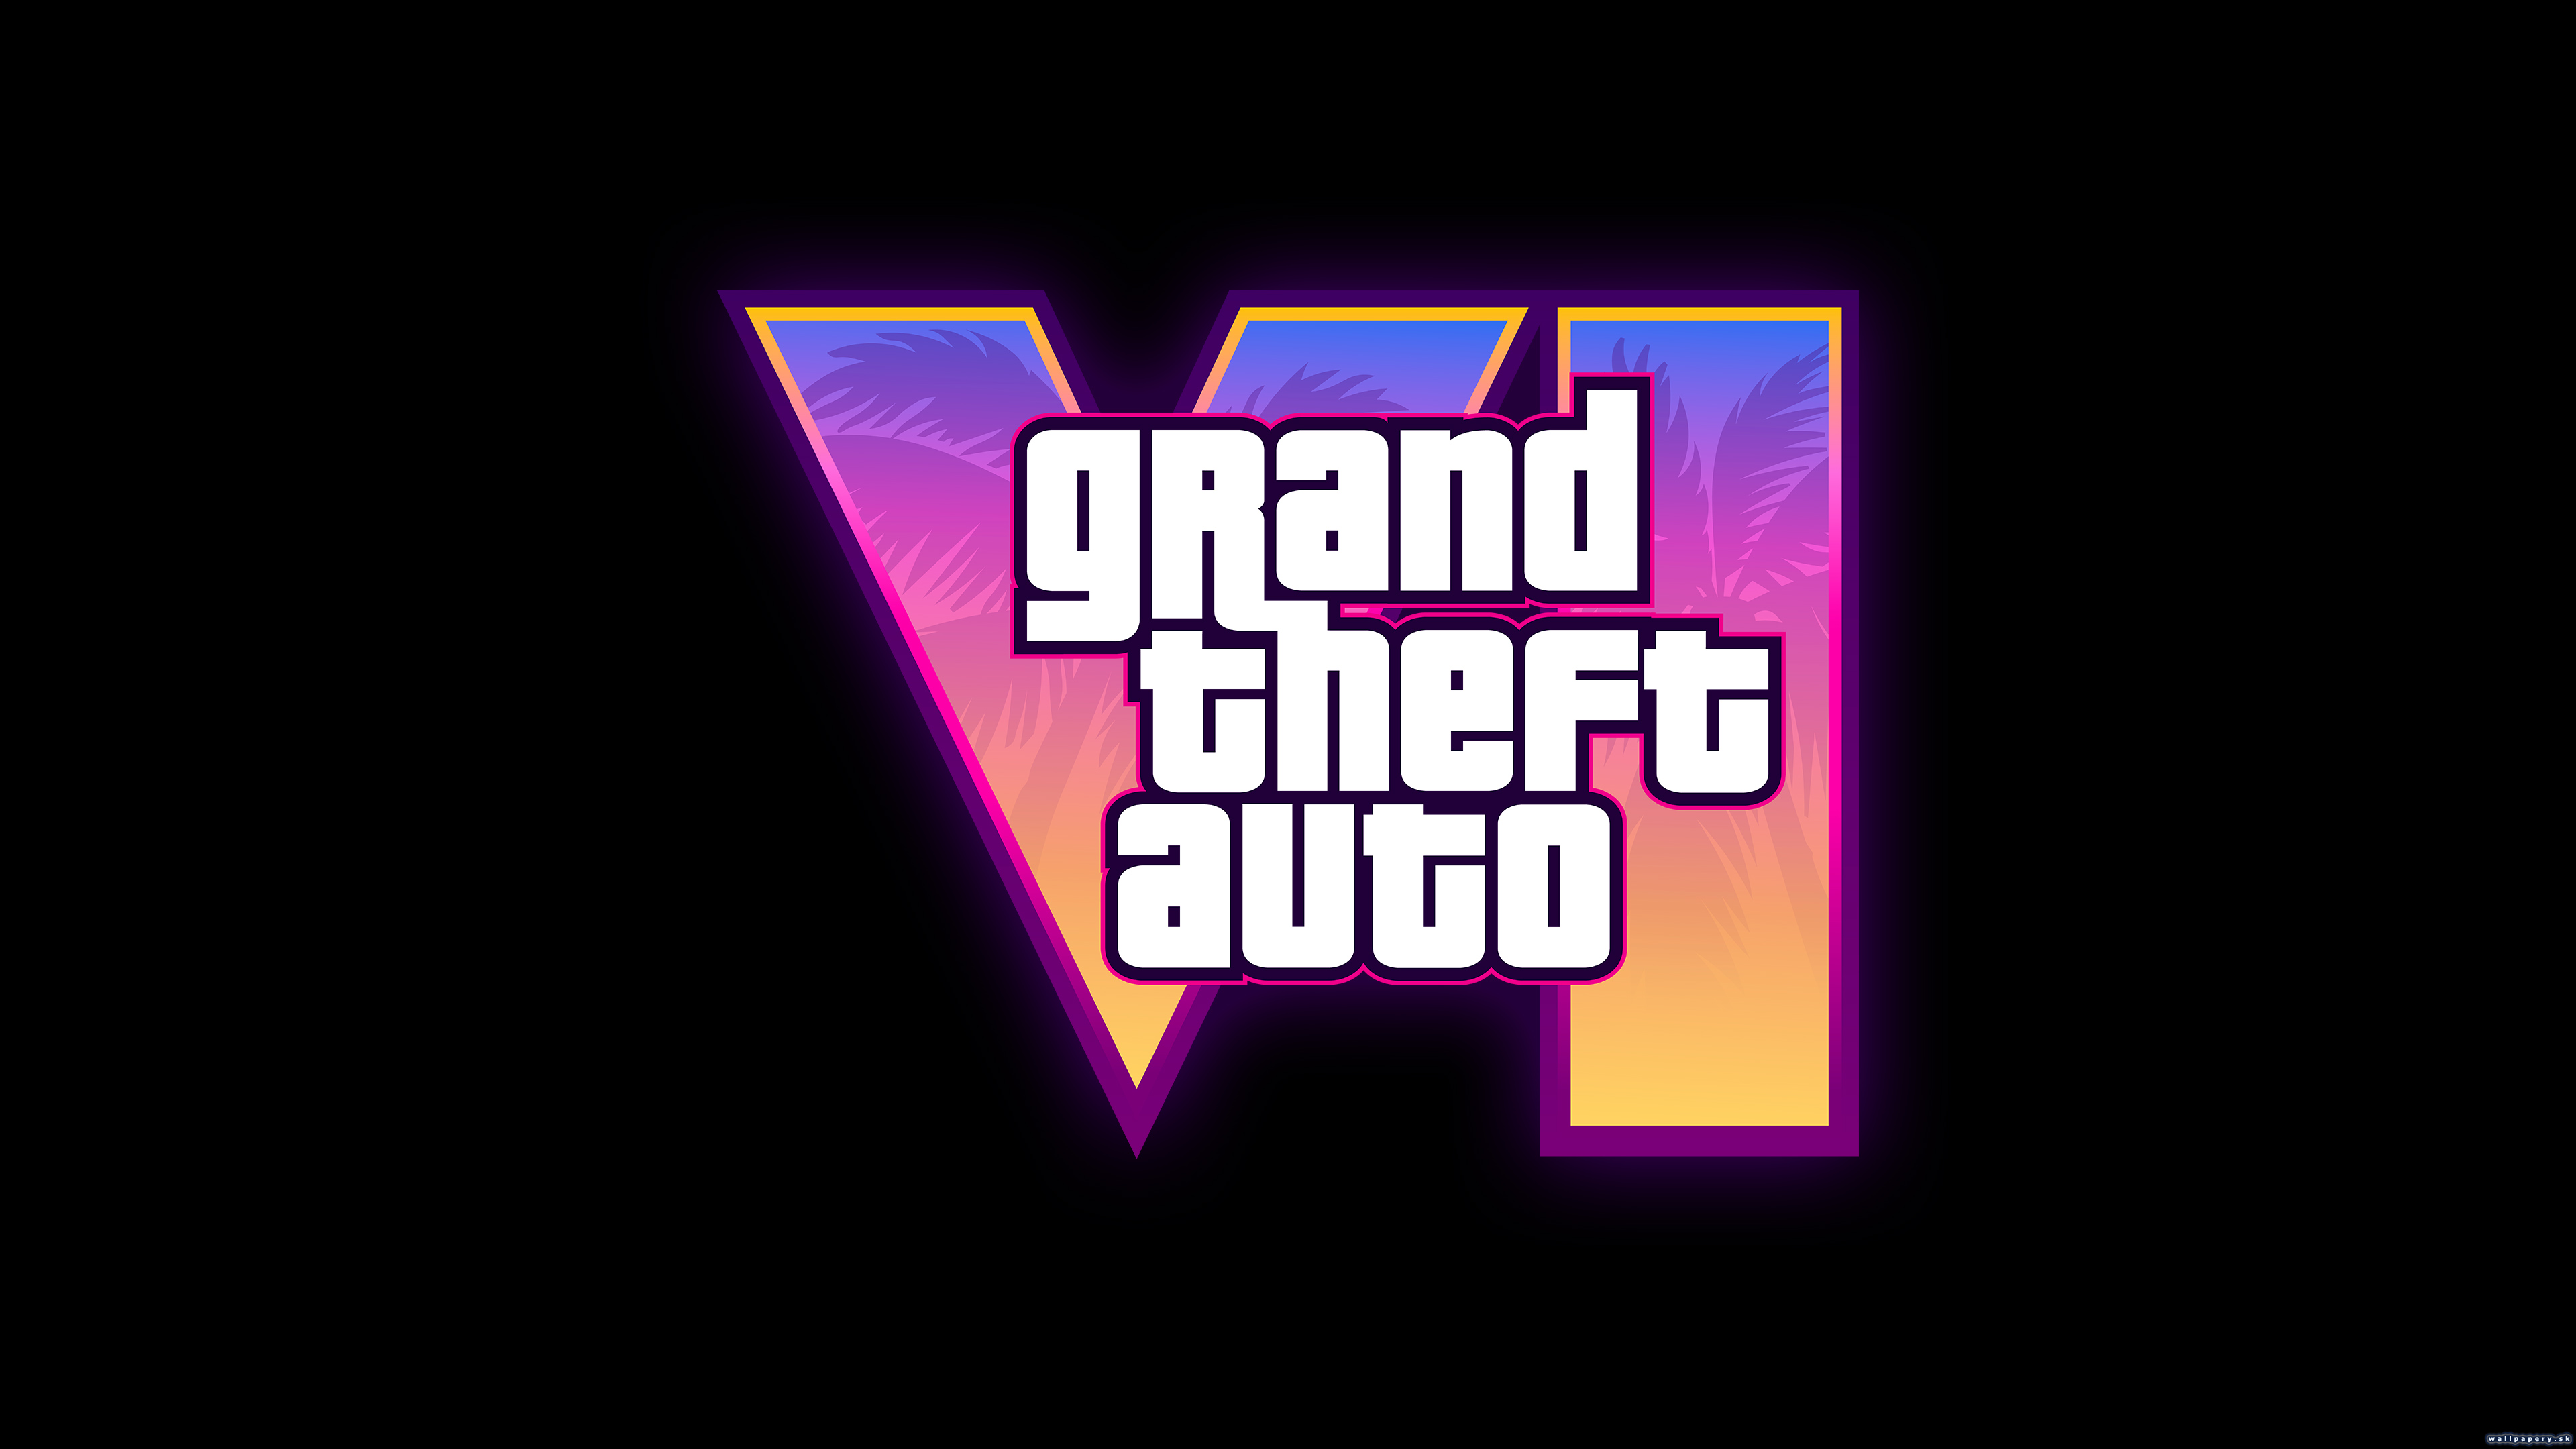 Grand Theft Auto VI - wallpaper 2